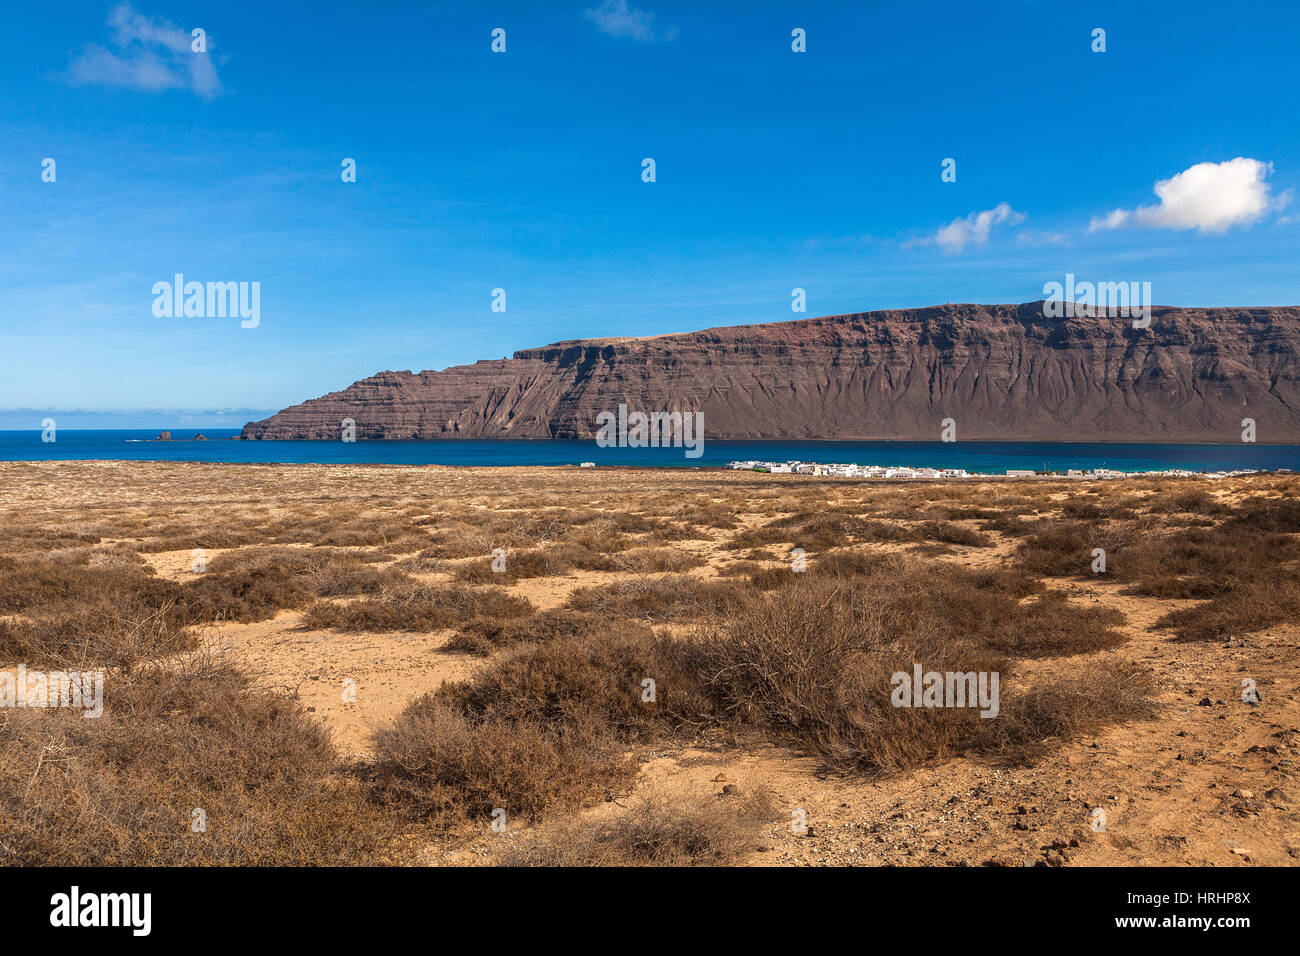 Image de paysage volcanique de Lanzarote, îles Canaries, Espagne Banque D'Images